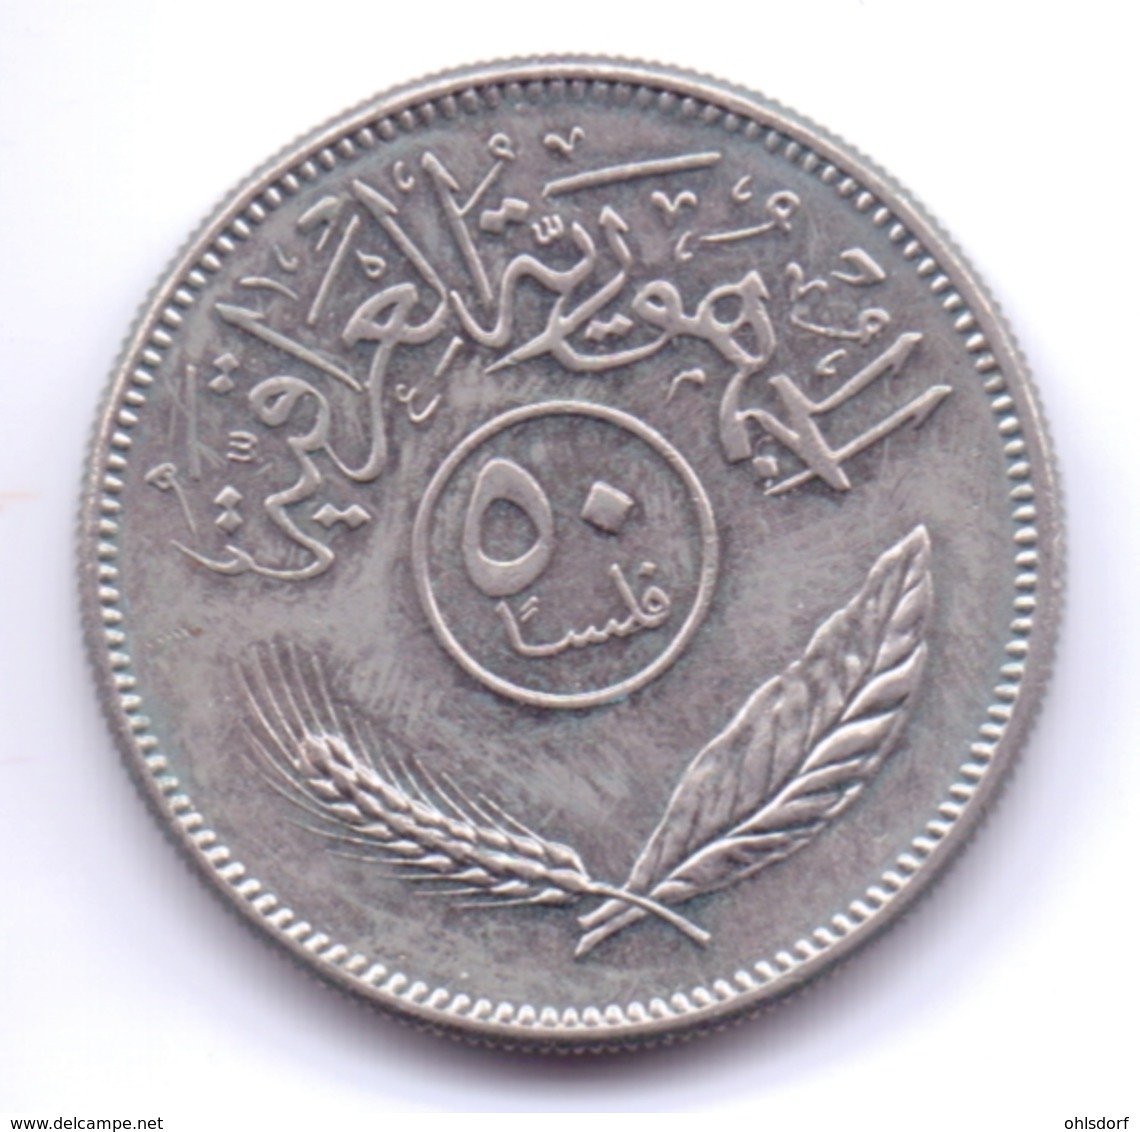 IRAQ 1981: 50 Fils, KM 128 - Irak